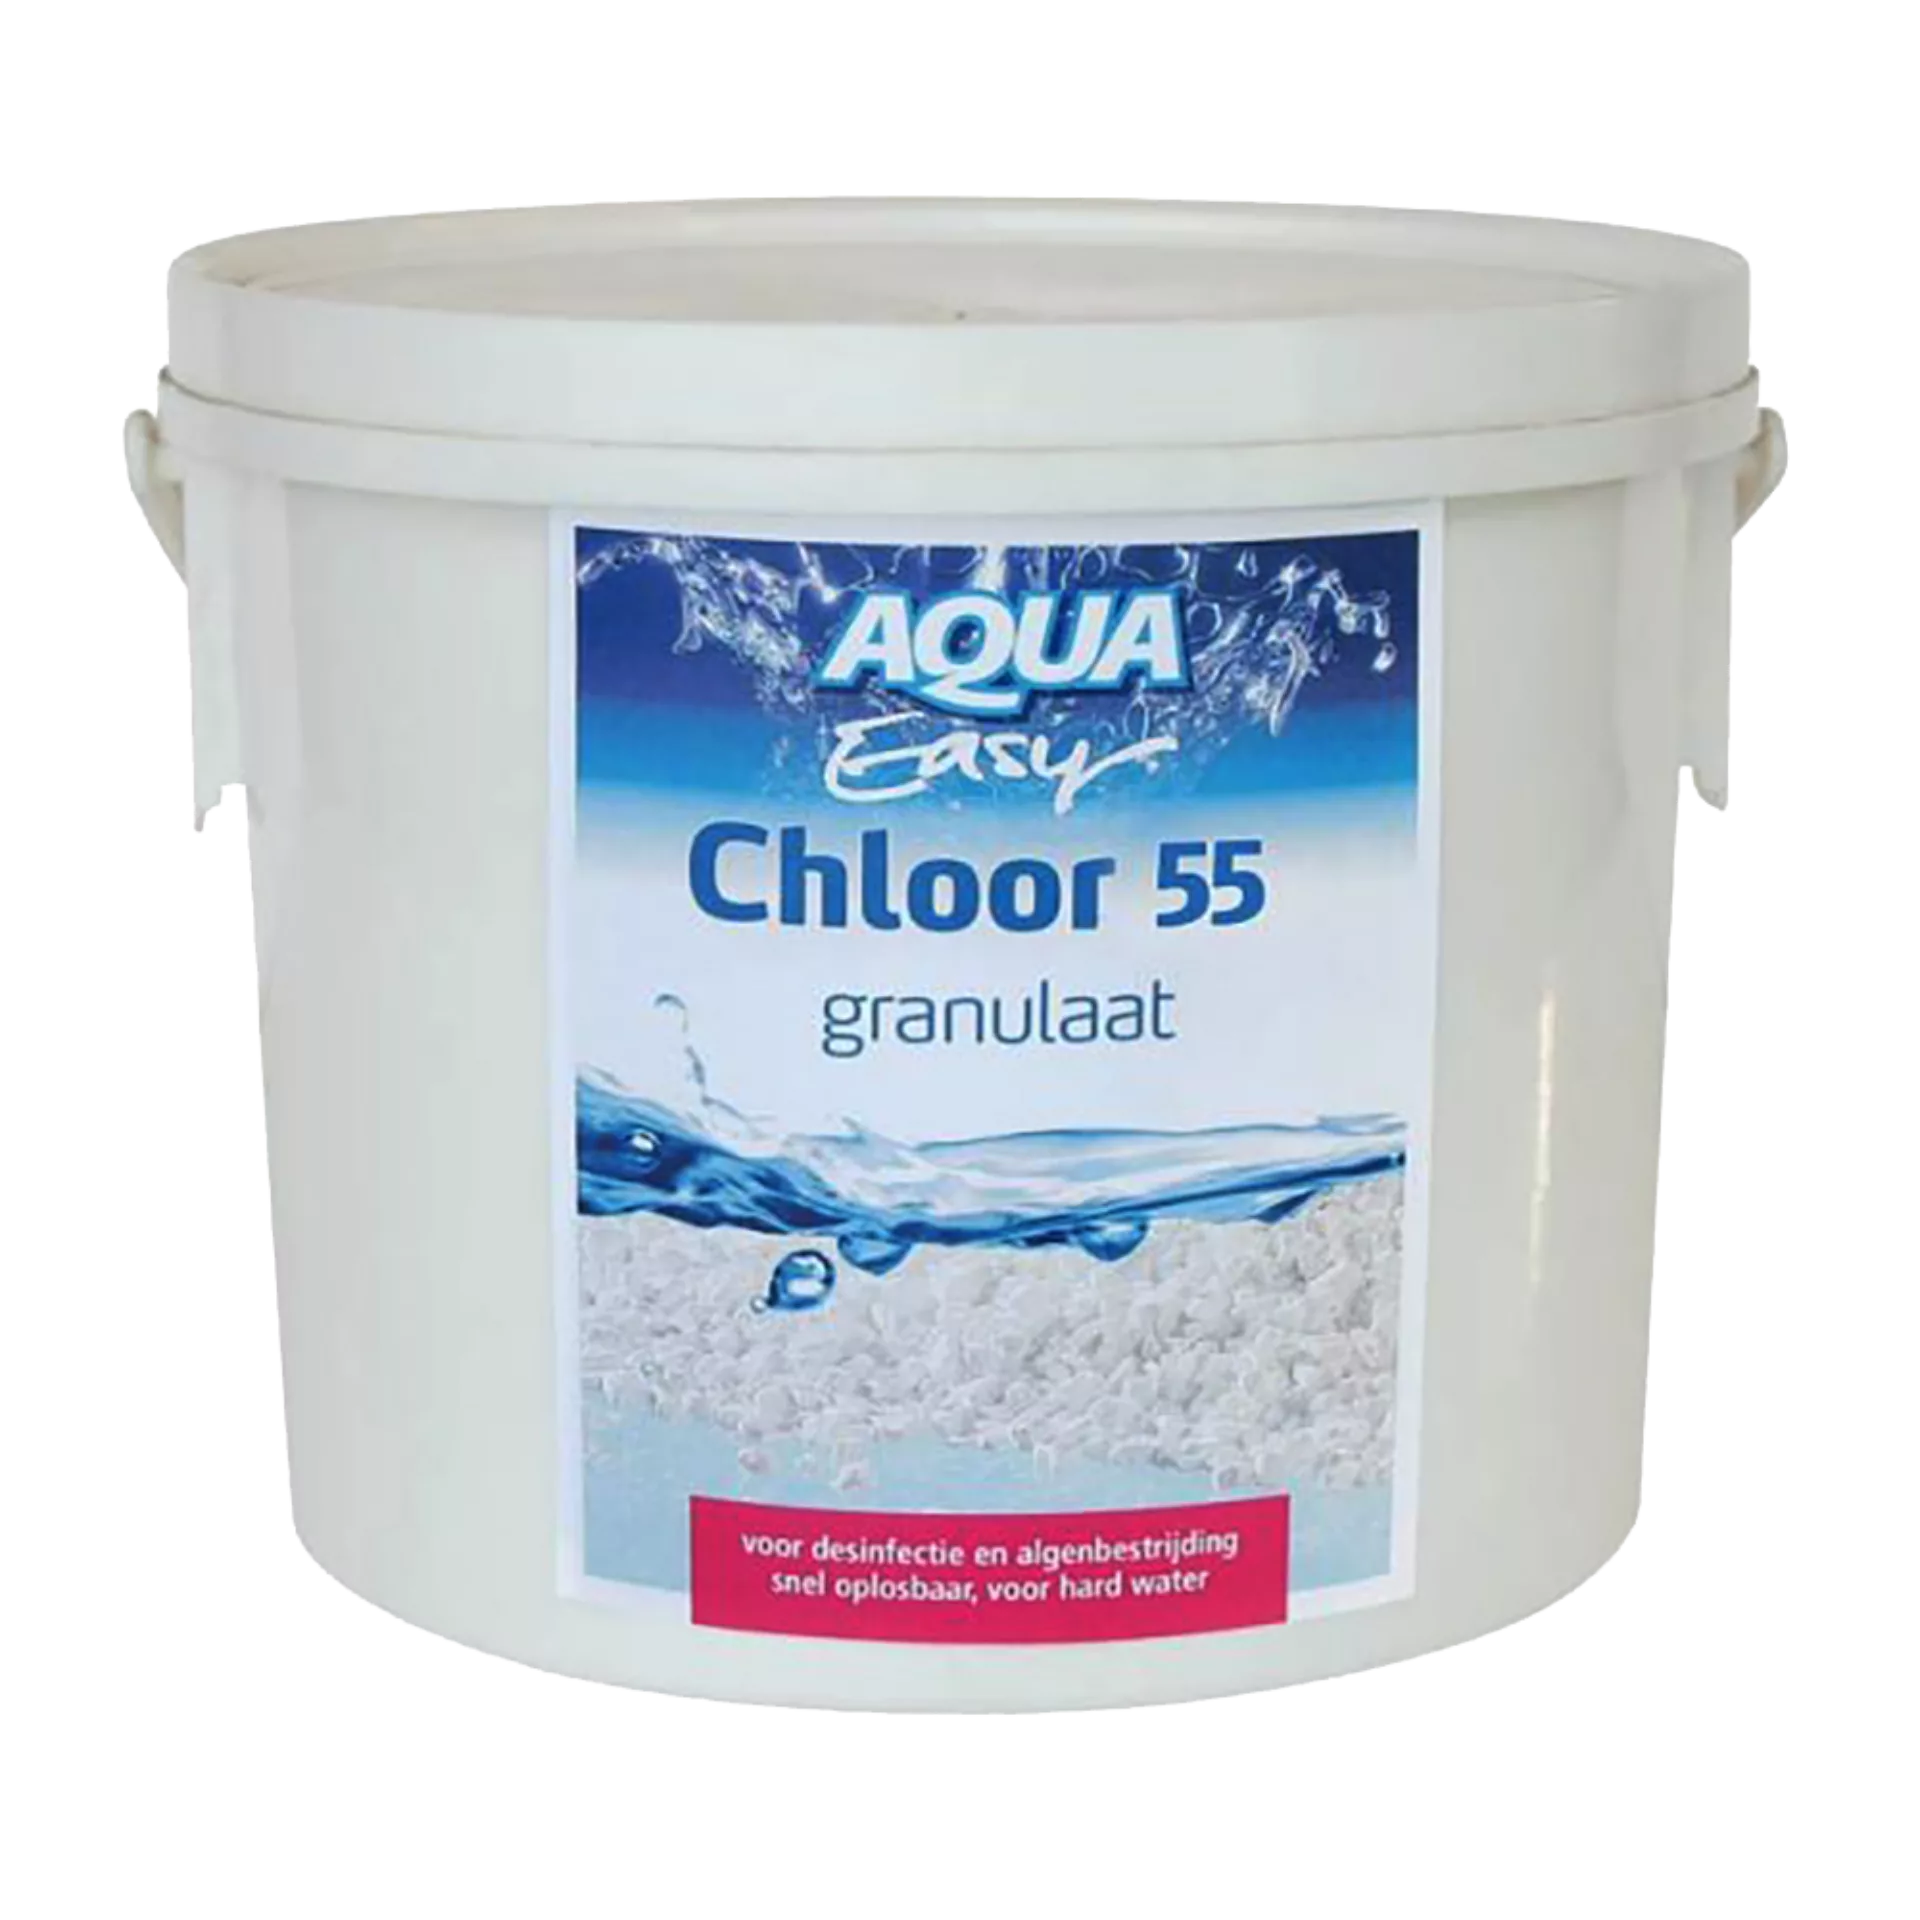 Chloor 55 granulaat (5kg)